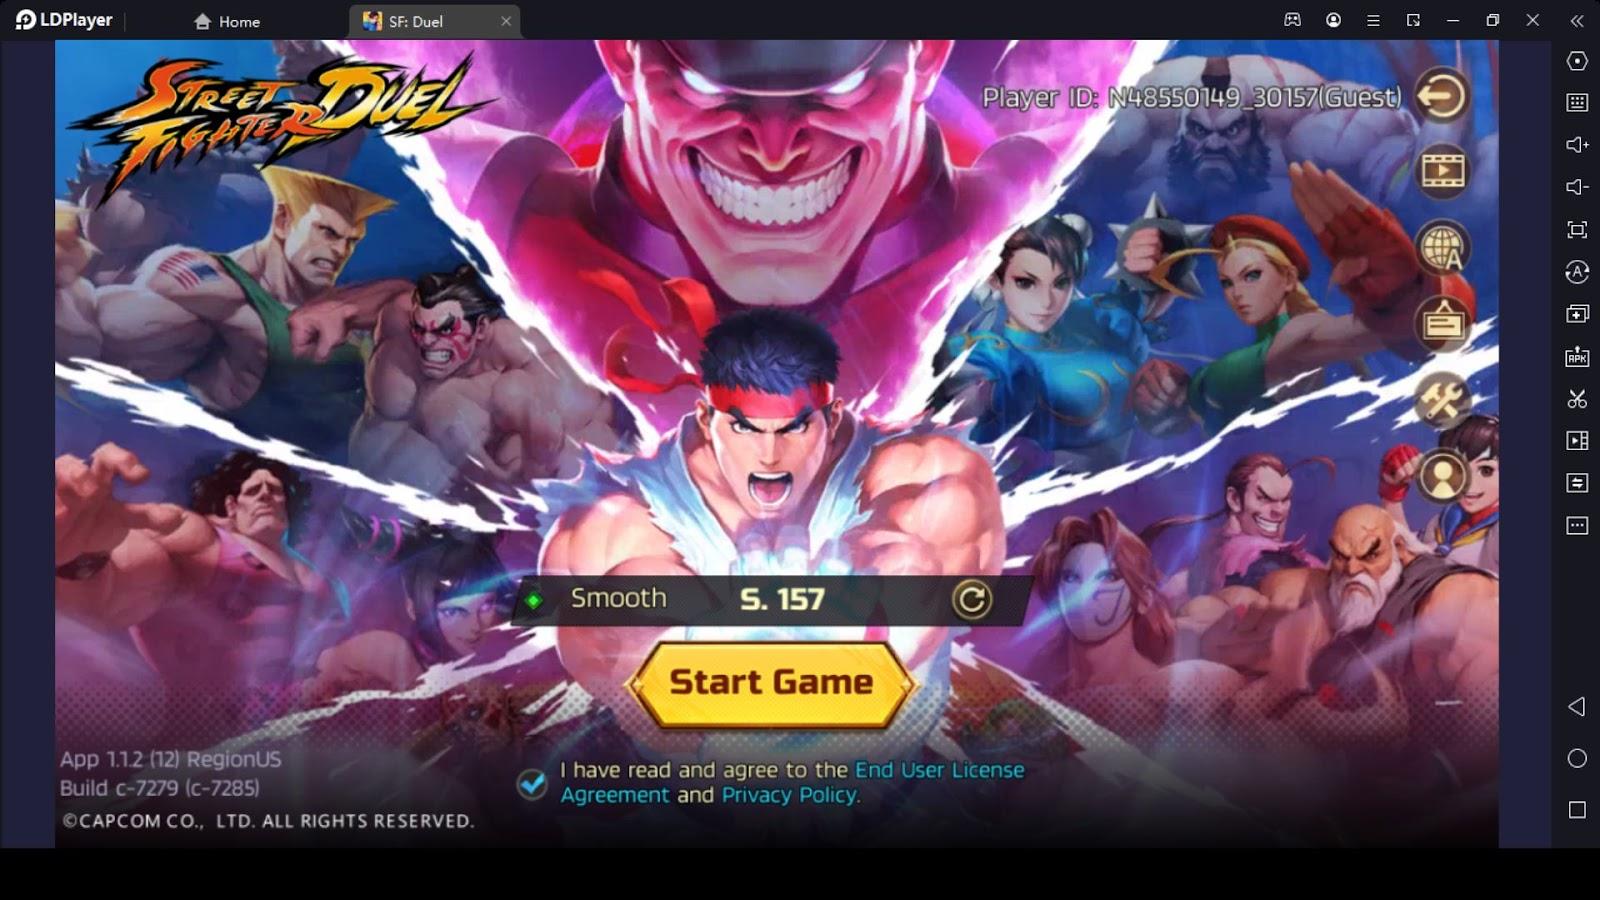 Street Fighter Duel Pre-Registration Begins